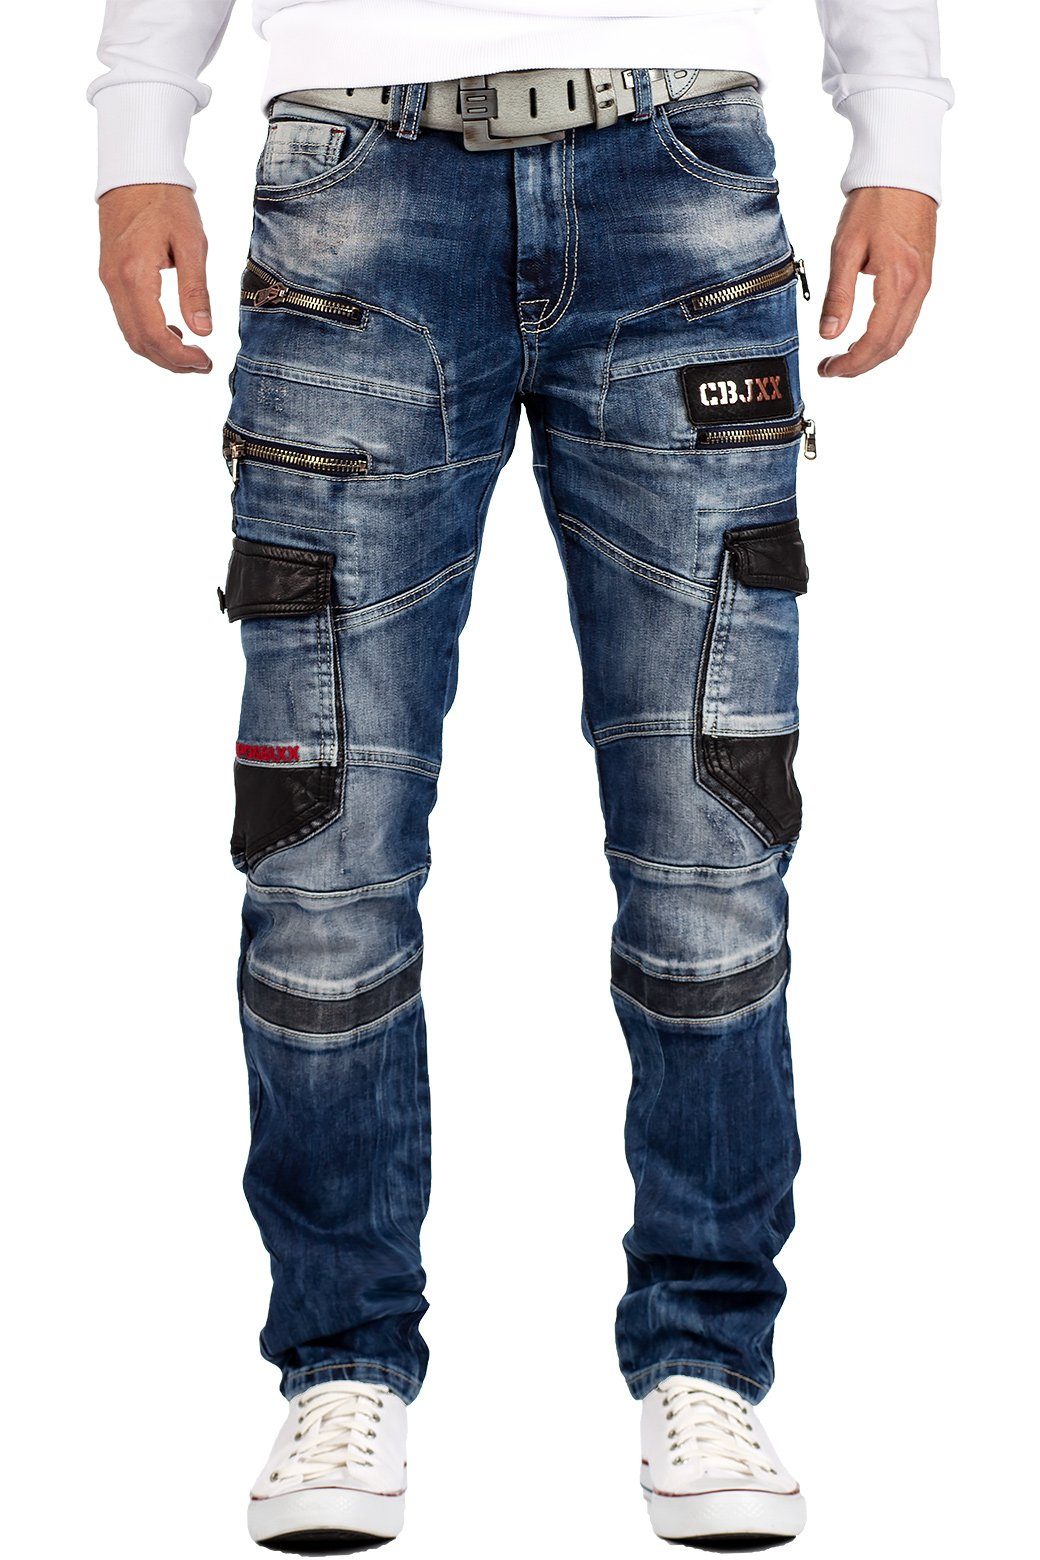 Cipo & Baxx Bikerjeans BA-CD561 Herren Jeans Freizeithose im Bikerstyle mit roten Teilbereichen im Cargo Stil blau